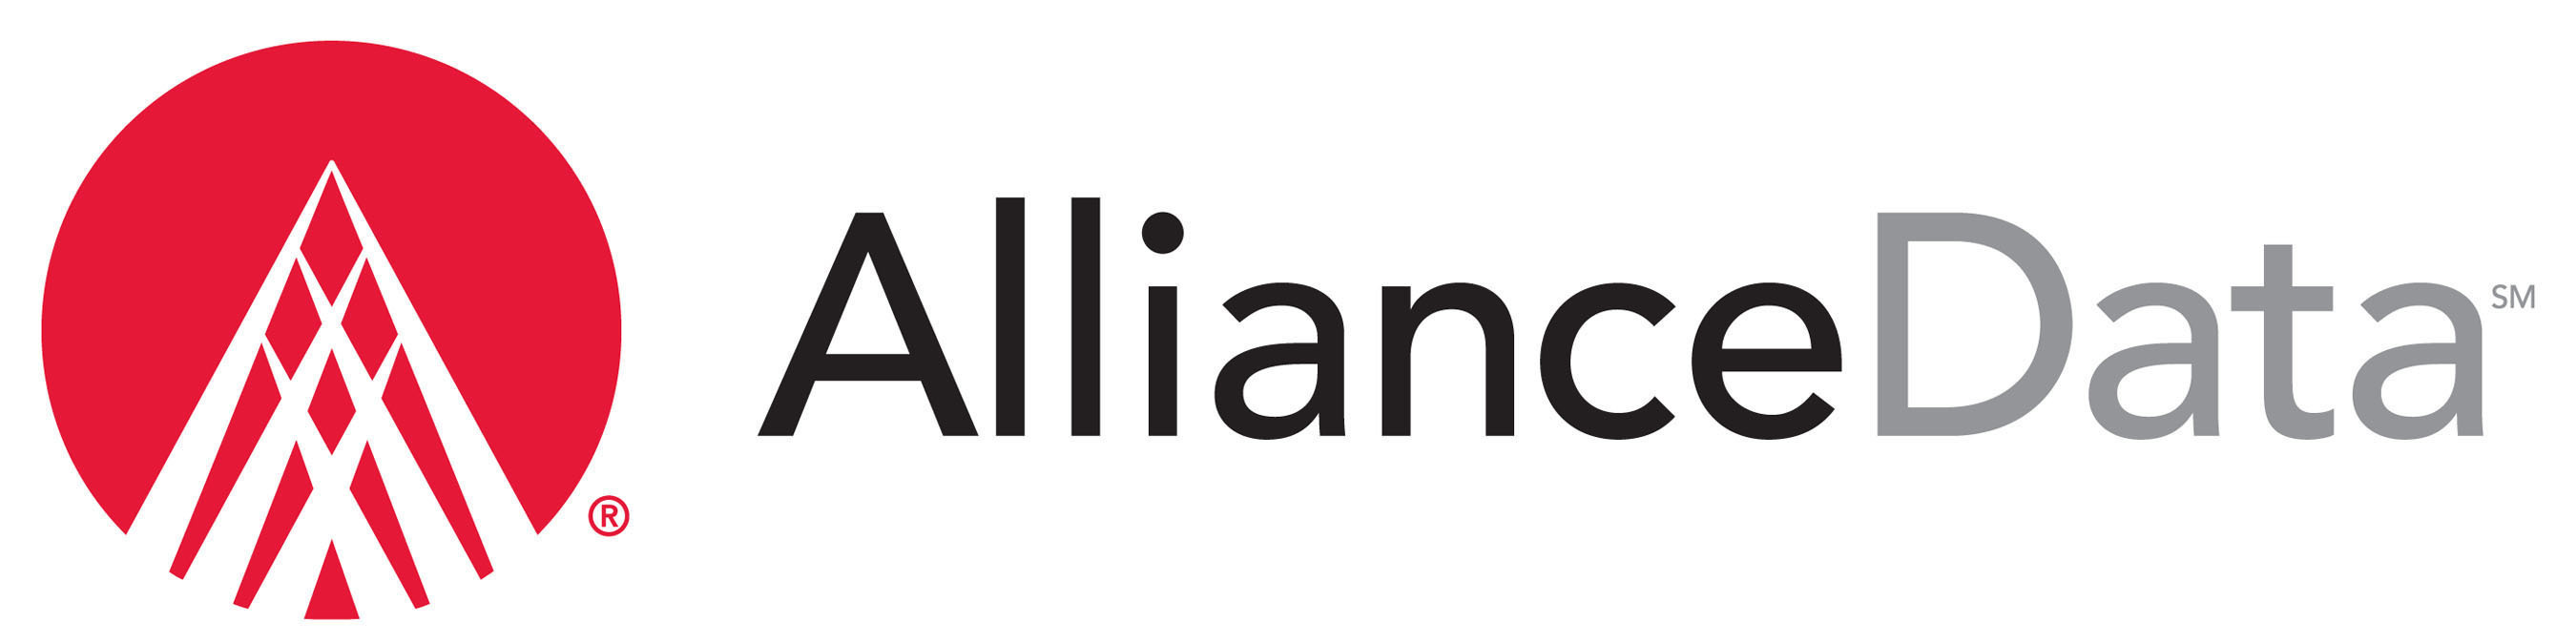 Alliance Data logo.